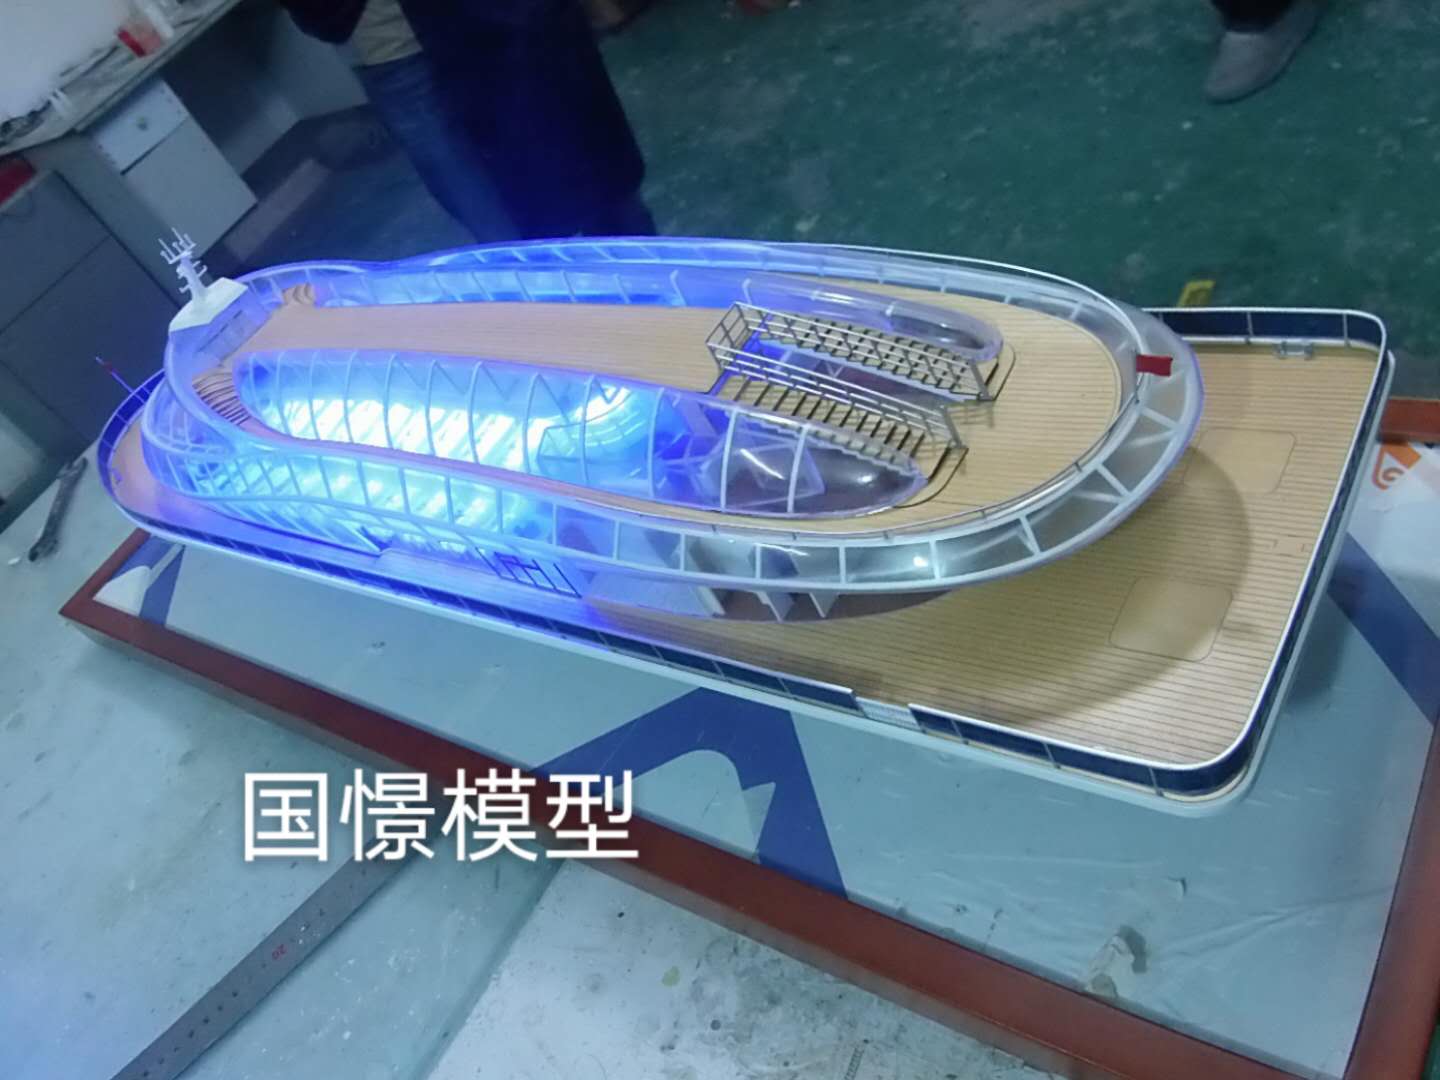 丰顺县船舶模型